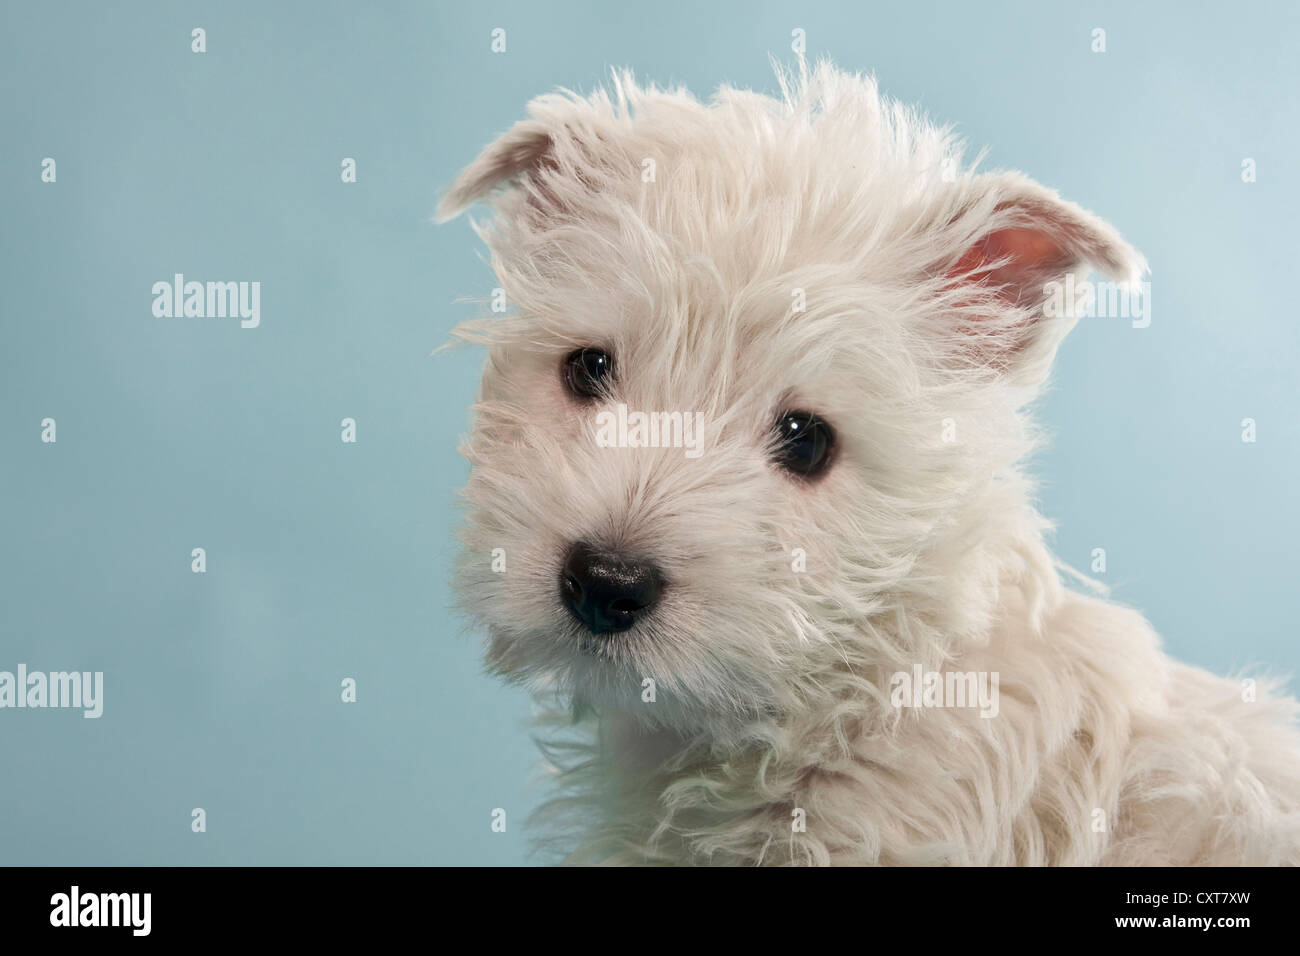 West Highland White Terrier, chiot Westie, portrait Banque D'Images